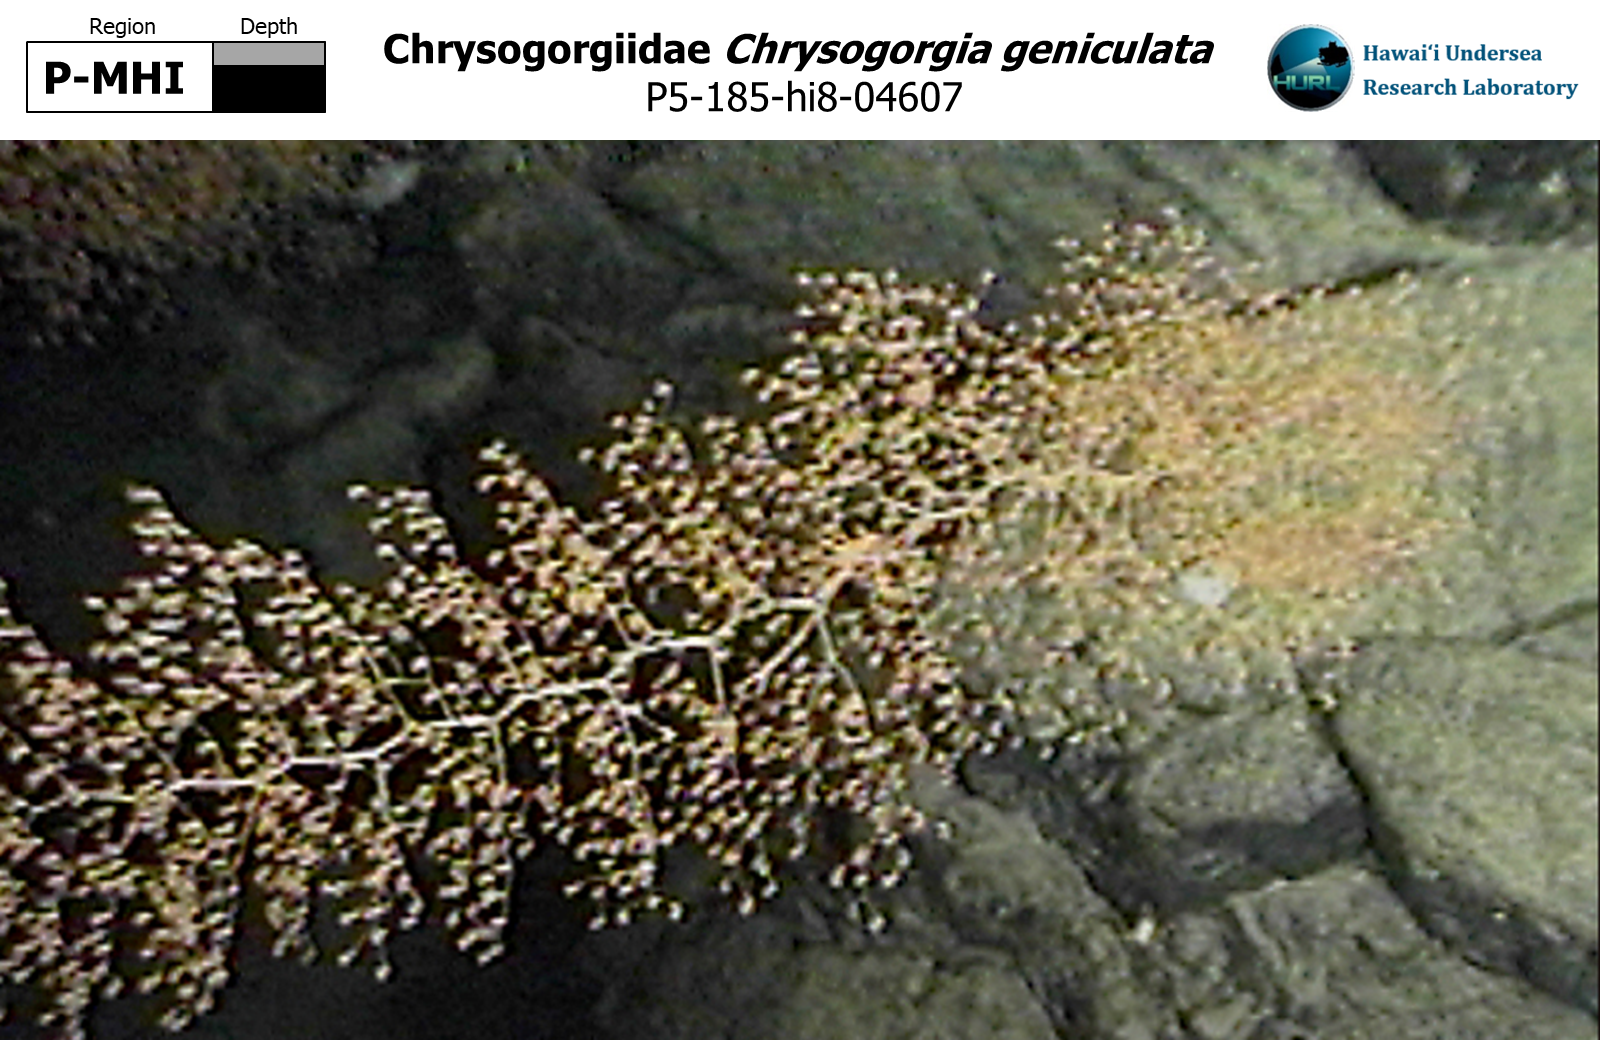 Chrysogorgia geniculata